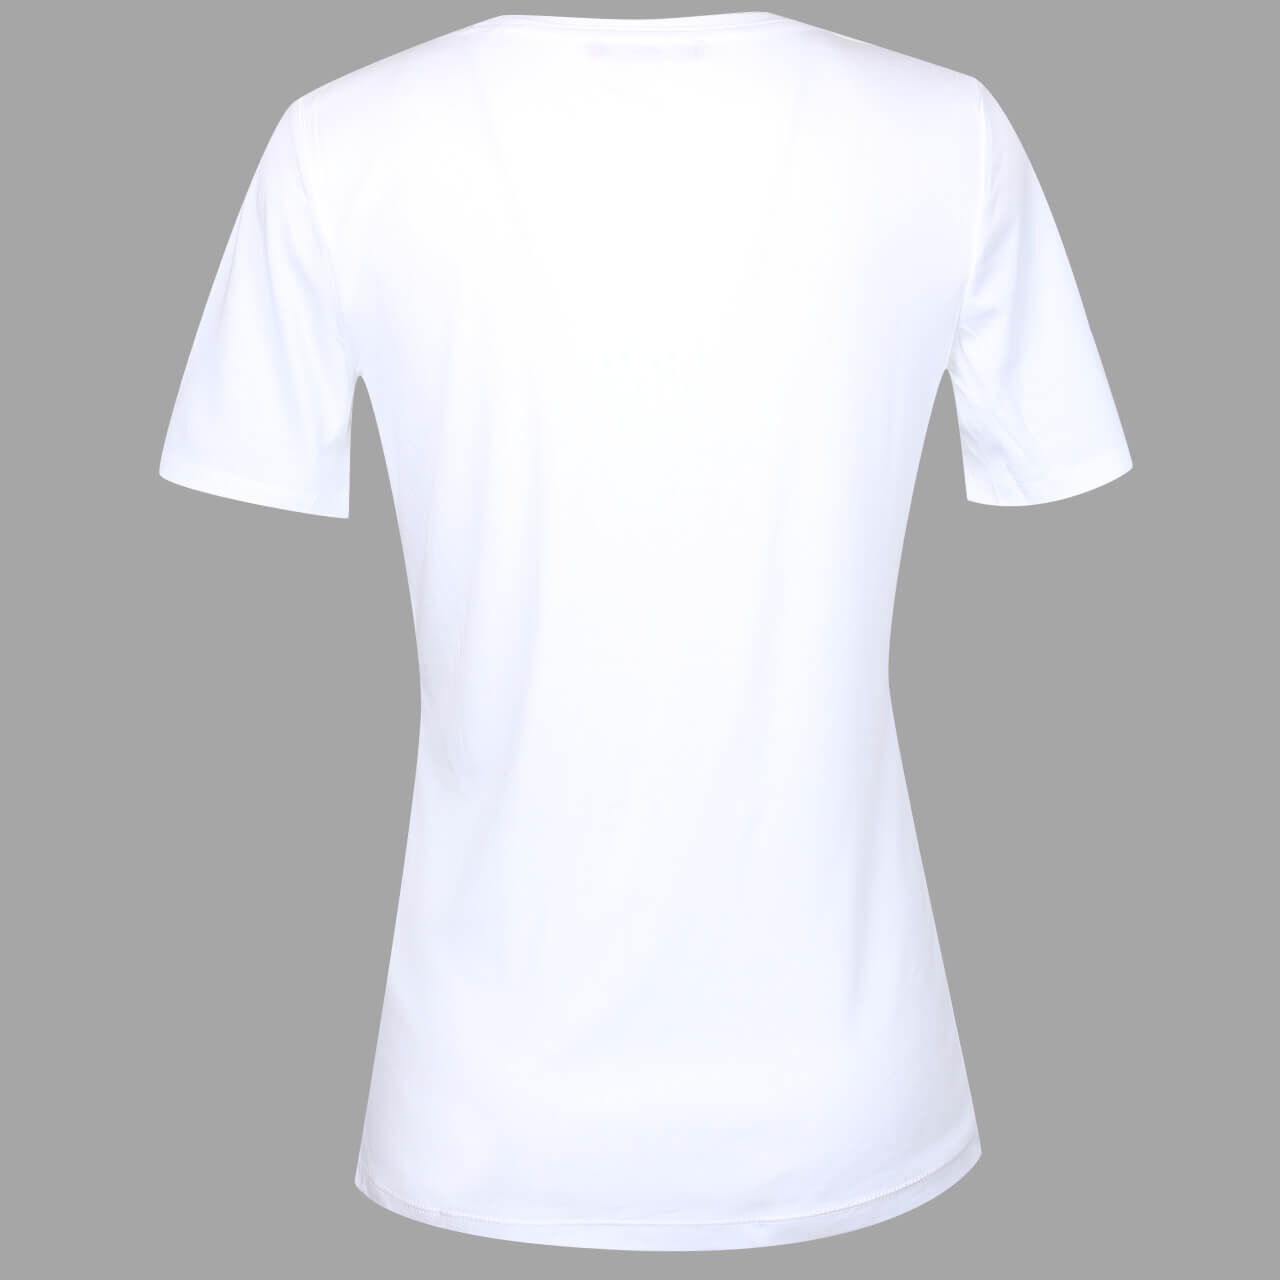 s.Oliver T-Shirt für Damen in Weiß, FarbNr.: 0100